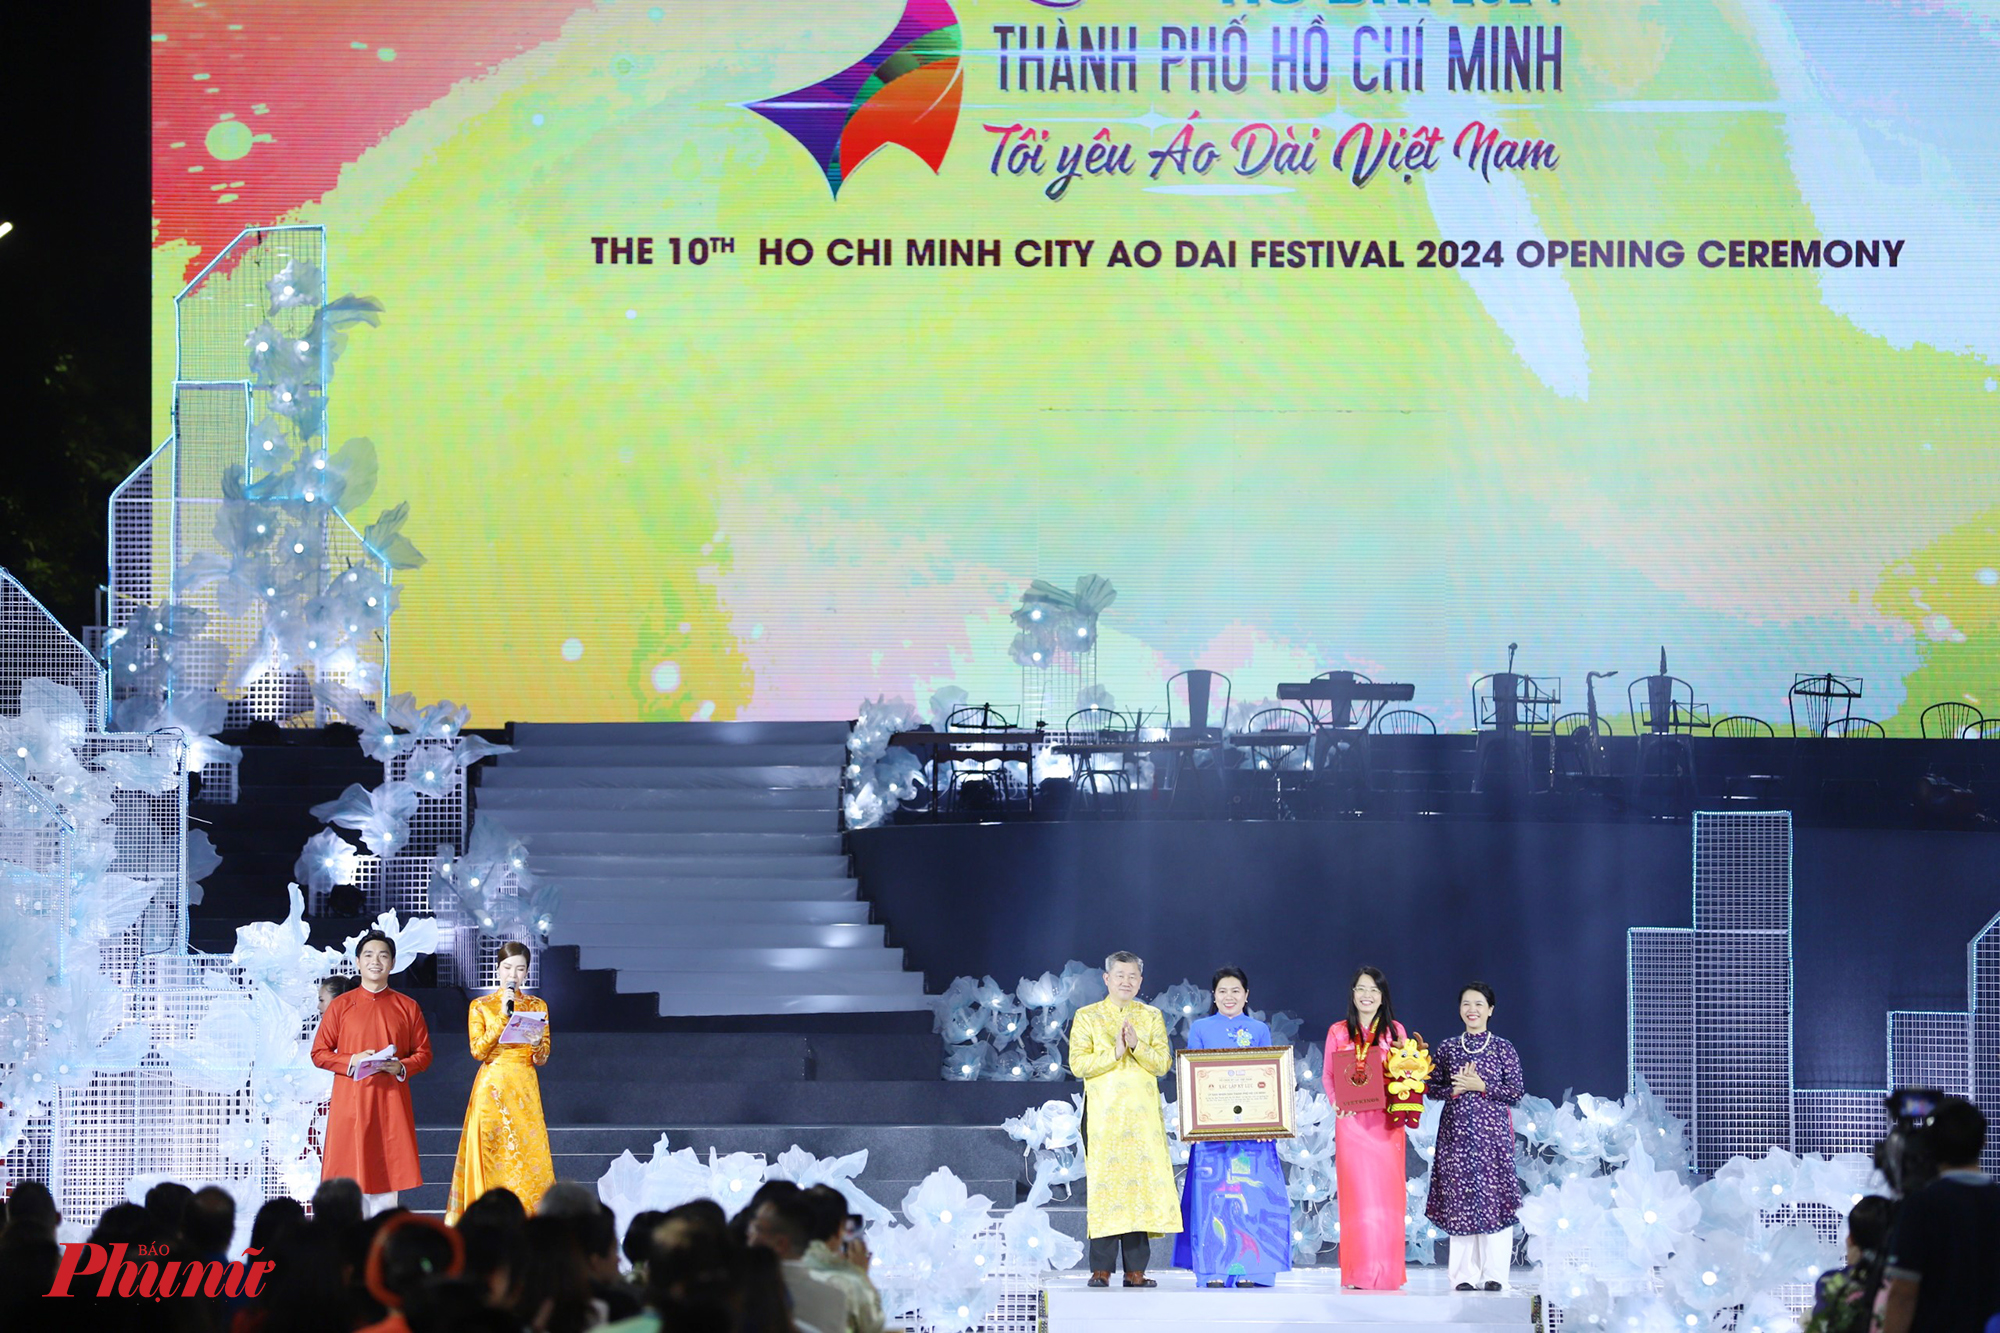 Cũng trong tối 7/3, Tổ chức Kỷ lục Việt Nam VietKings trao bằng xác lập kỷ lục Việt Nam cho Lễ hội Áo dài TPHCM - Lễ hội tôn vinh và quảng bá áo dài Việt Nam được tổ chức thường niên liên tục nhiều lần nhất (10 lần từ năm 2014 đến năm 2024).